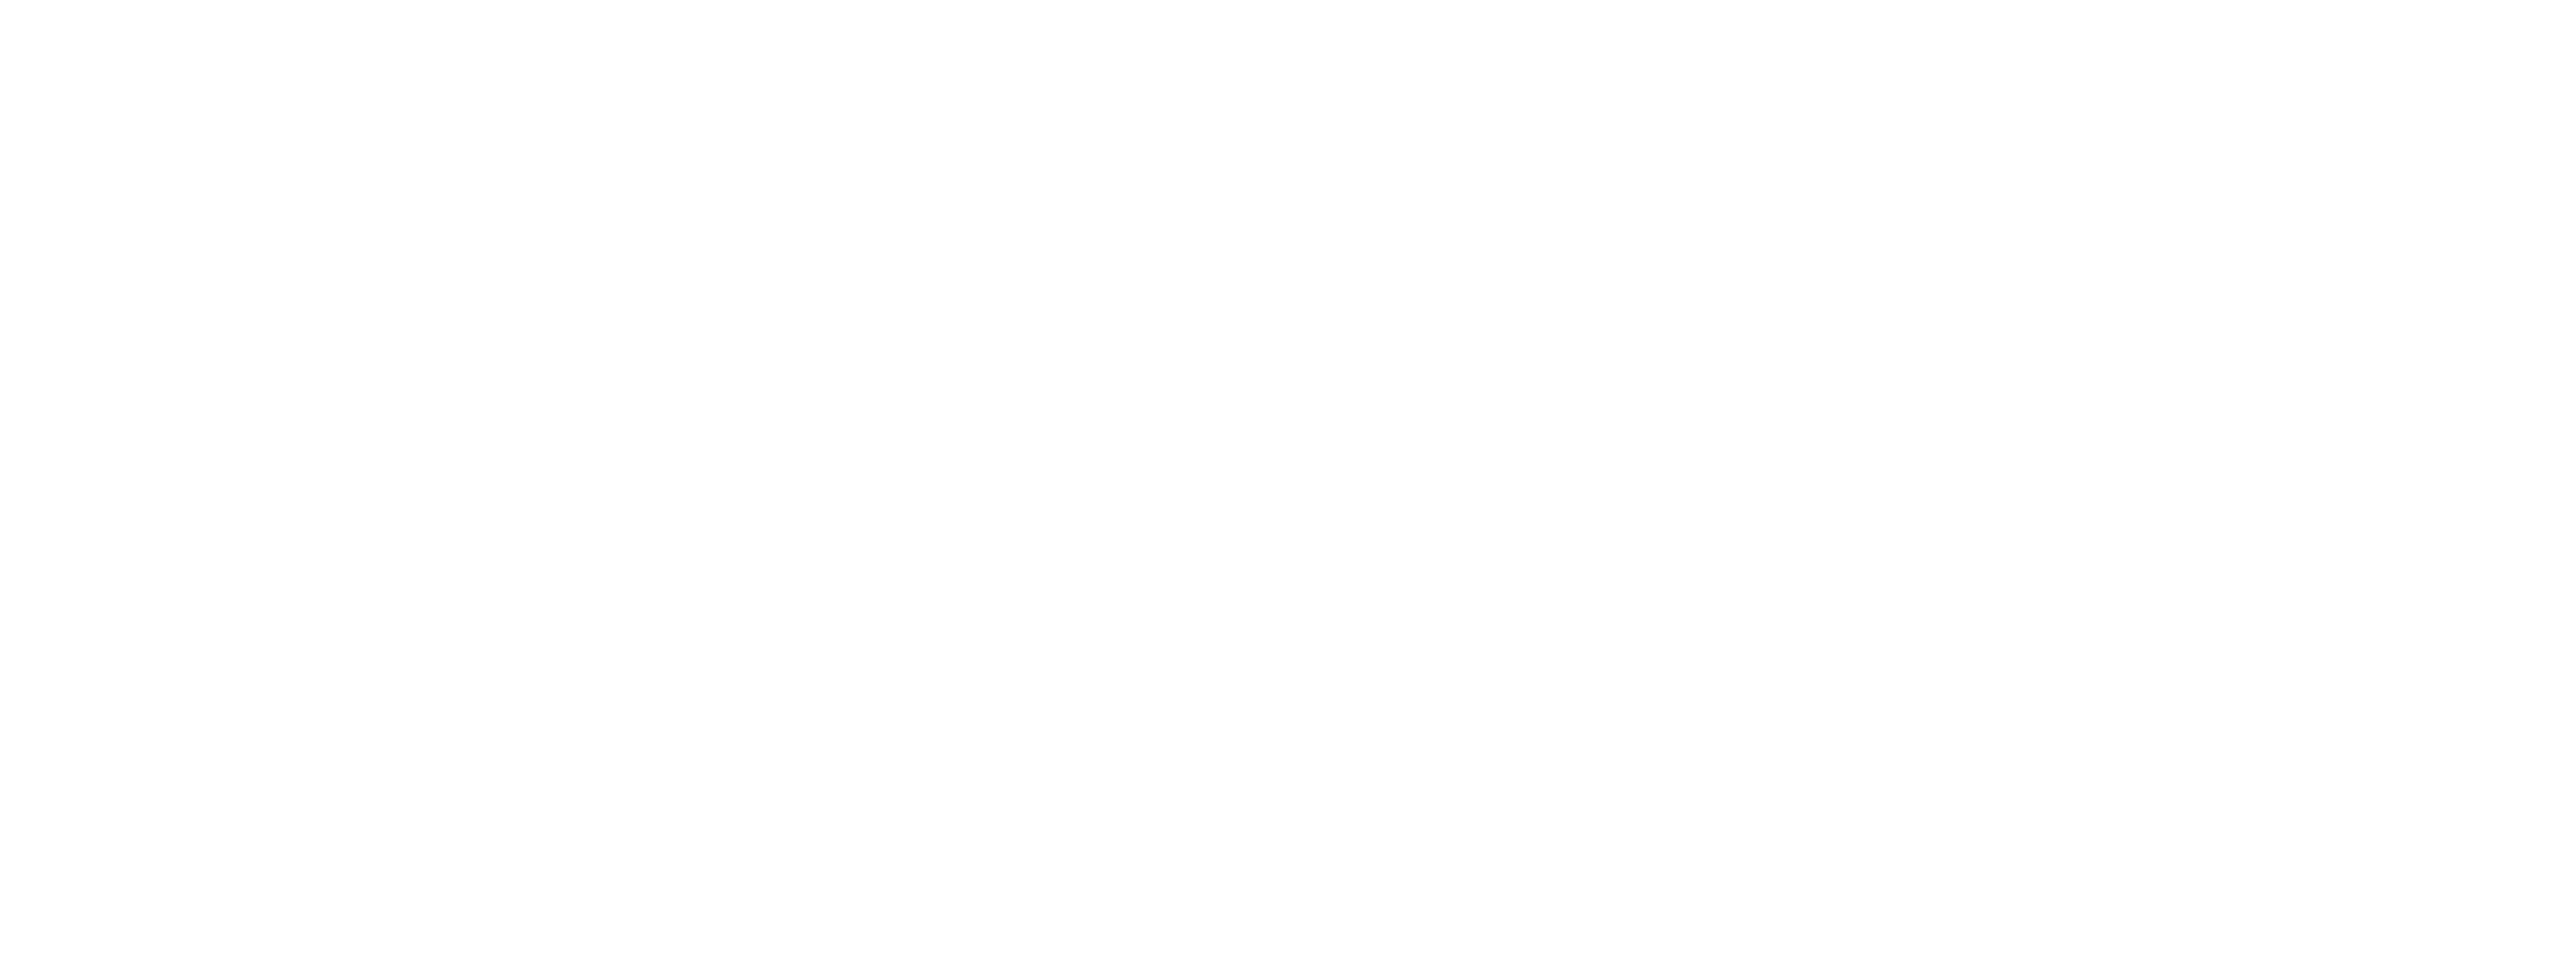 Digiboo - первая образовательная видеоплатформа с бесплатными вебинарами